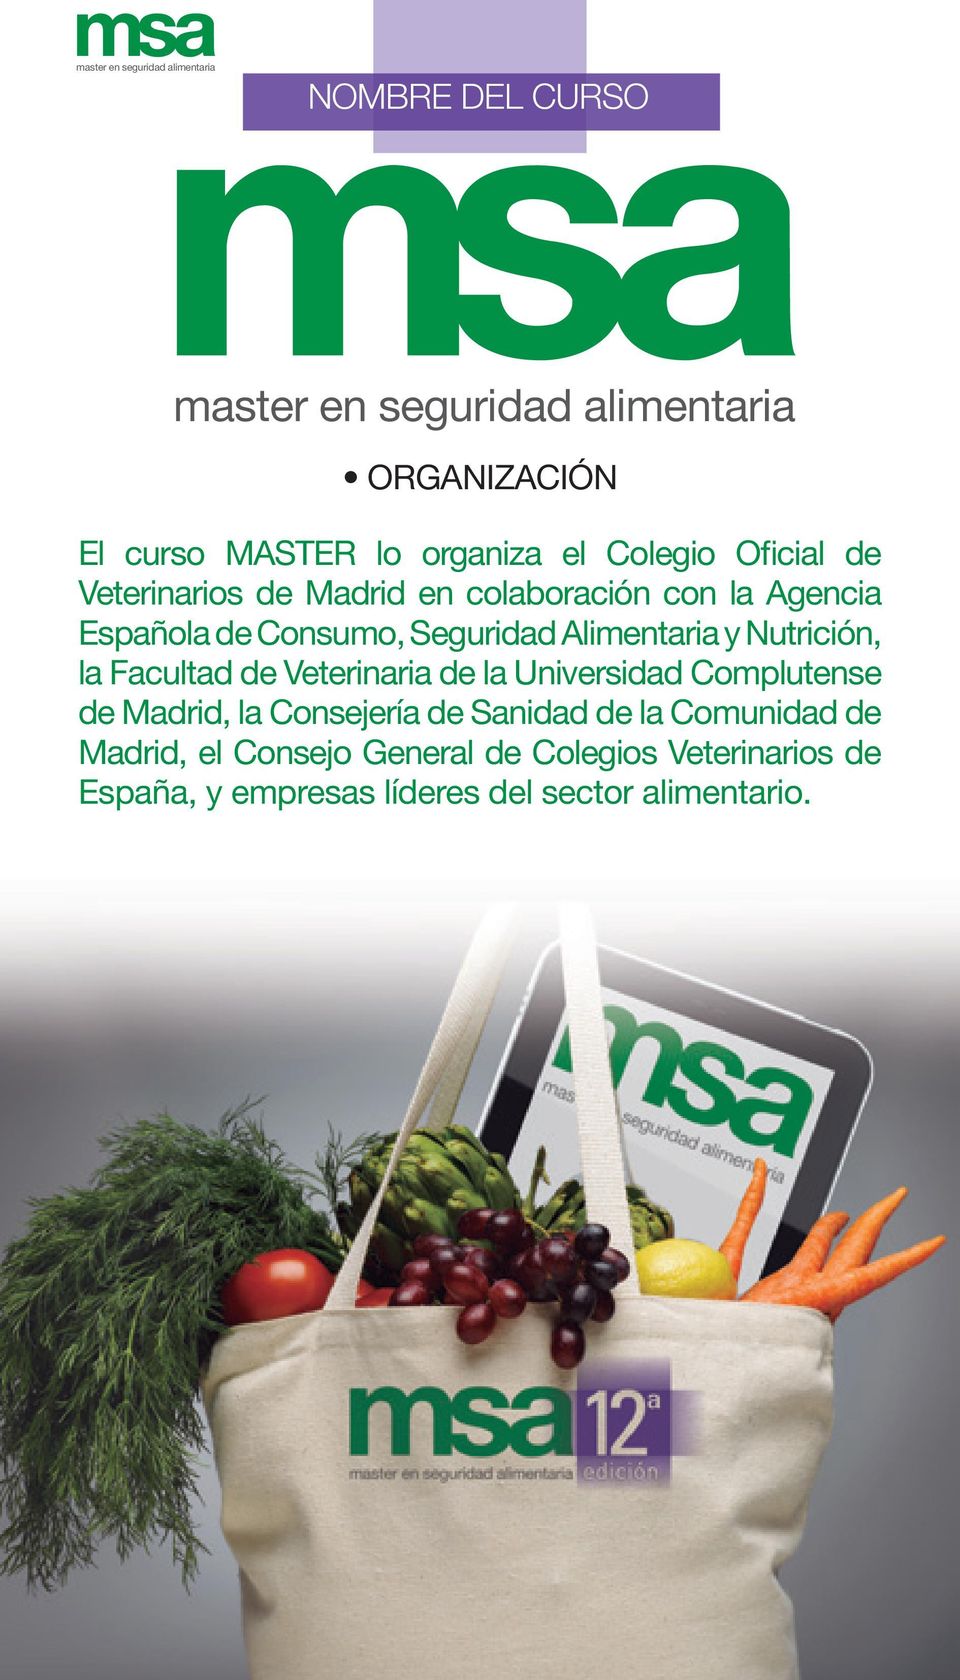 Alimentaria y Nutrición, la Facultad de Veterinaria de la Universidad Complutense de Madrid, la Consejería de Sanidad